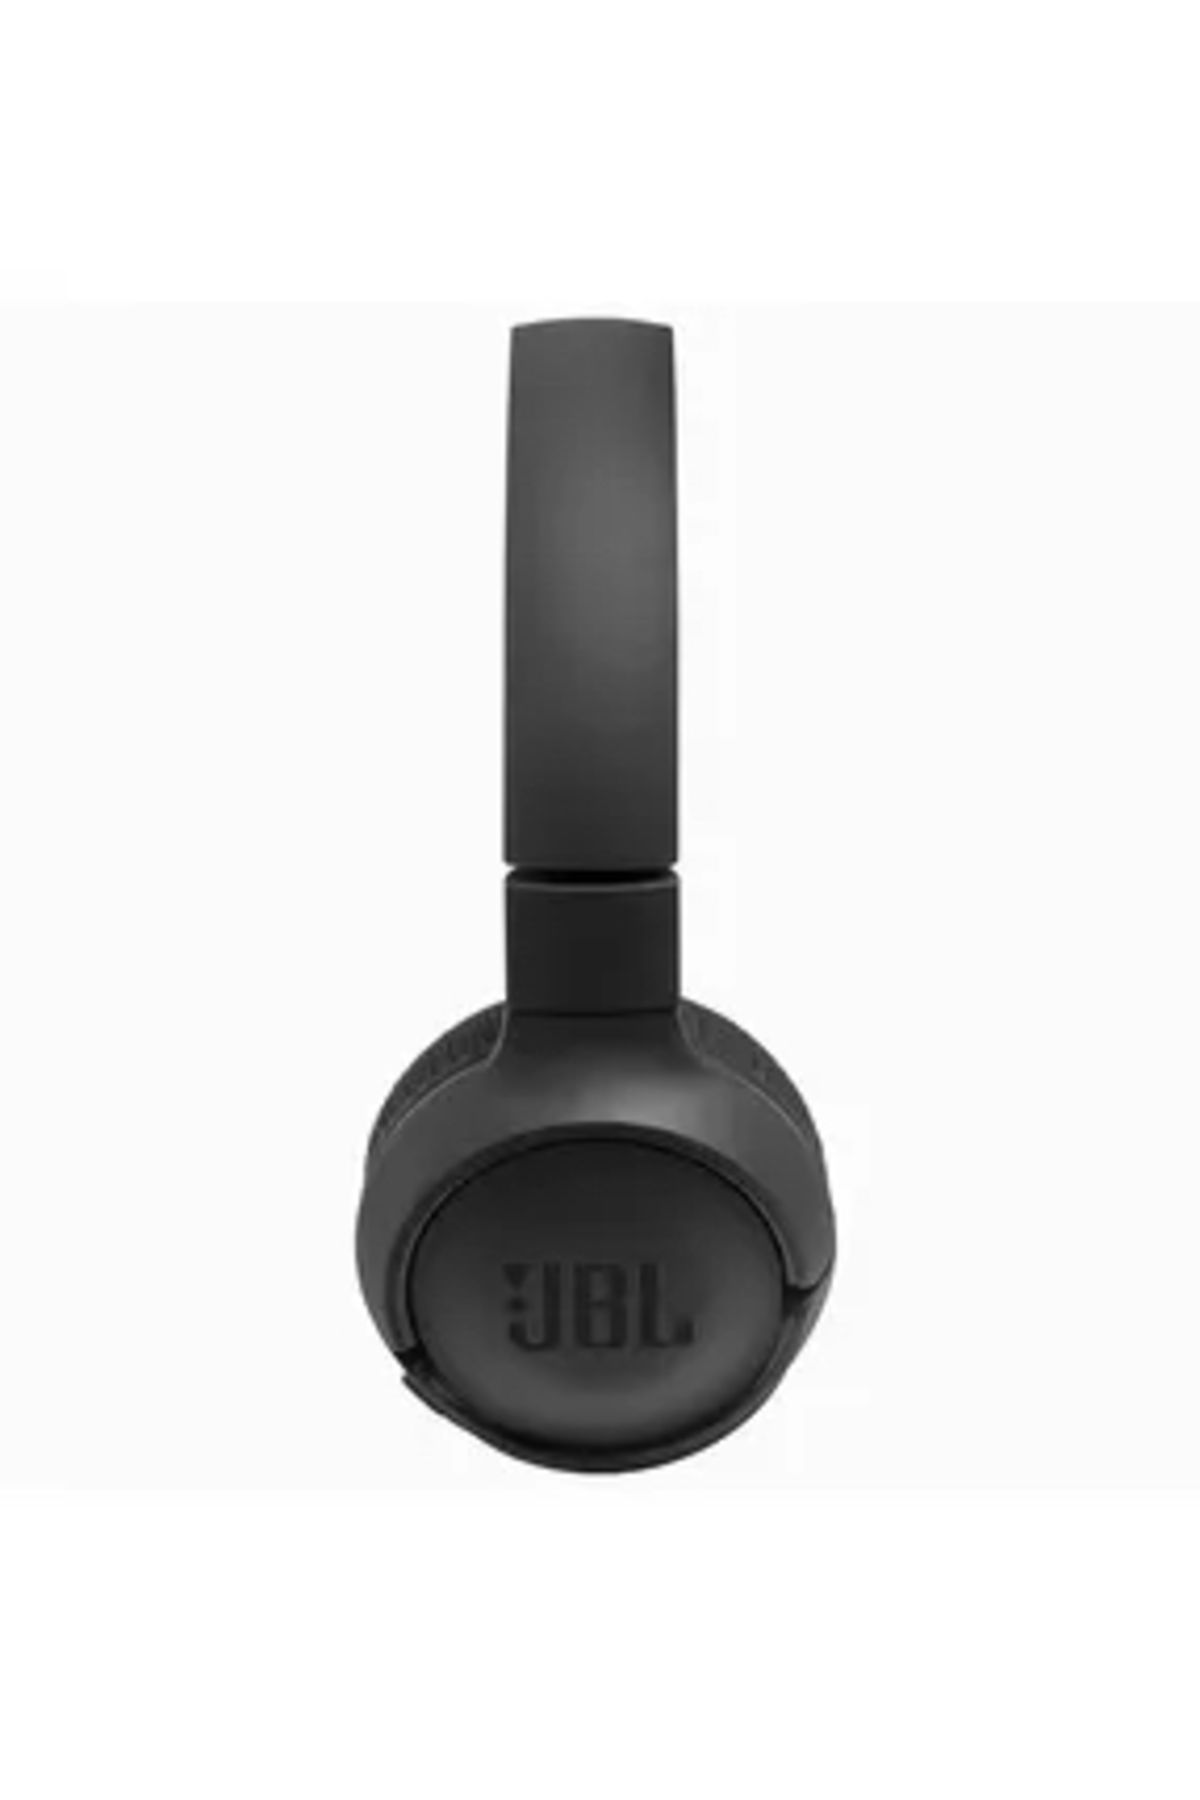 Syrox Jbl T560bt Bluetooth Mikrofonlu Kulak Üstü Kulaklık.